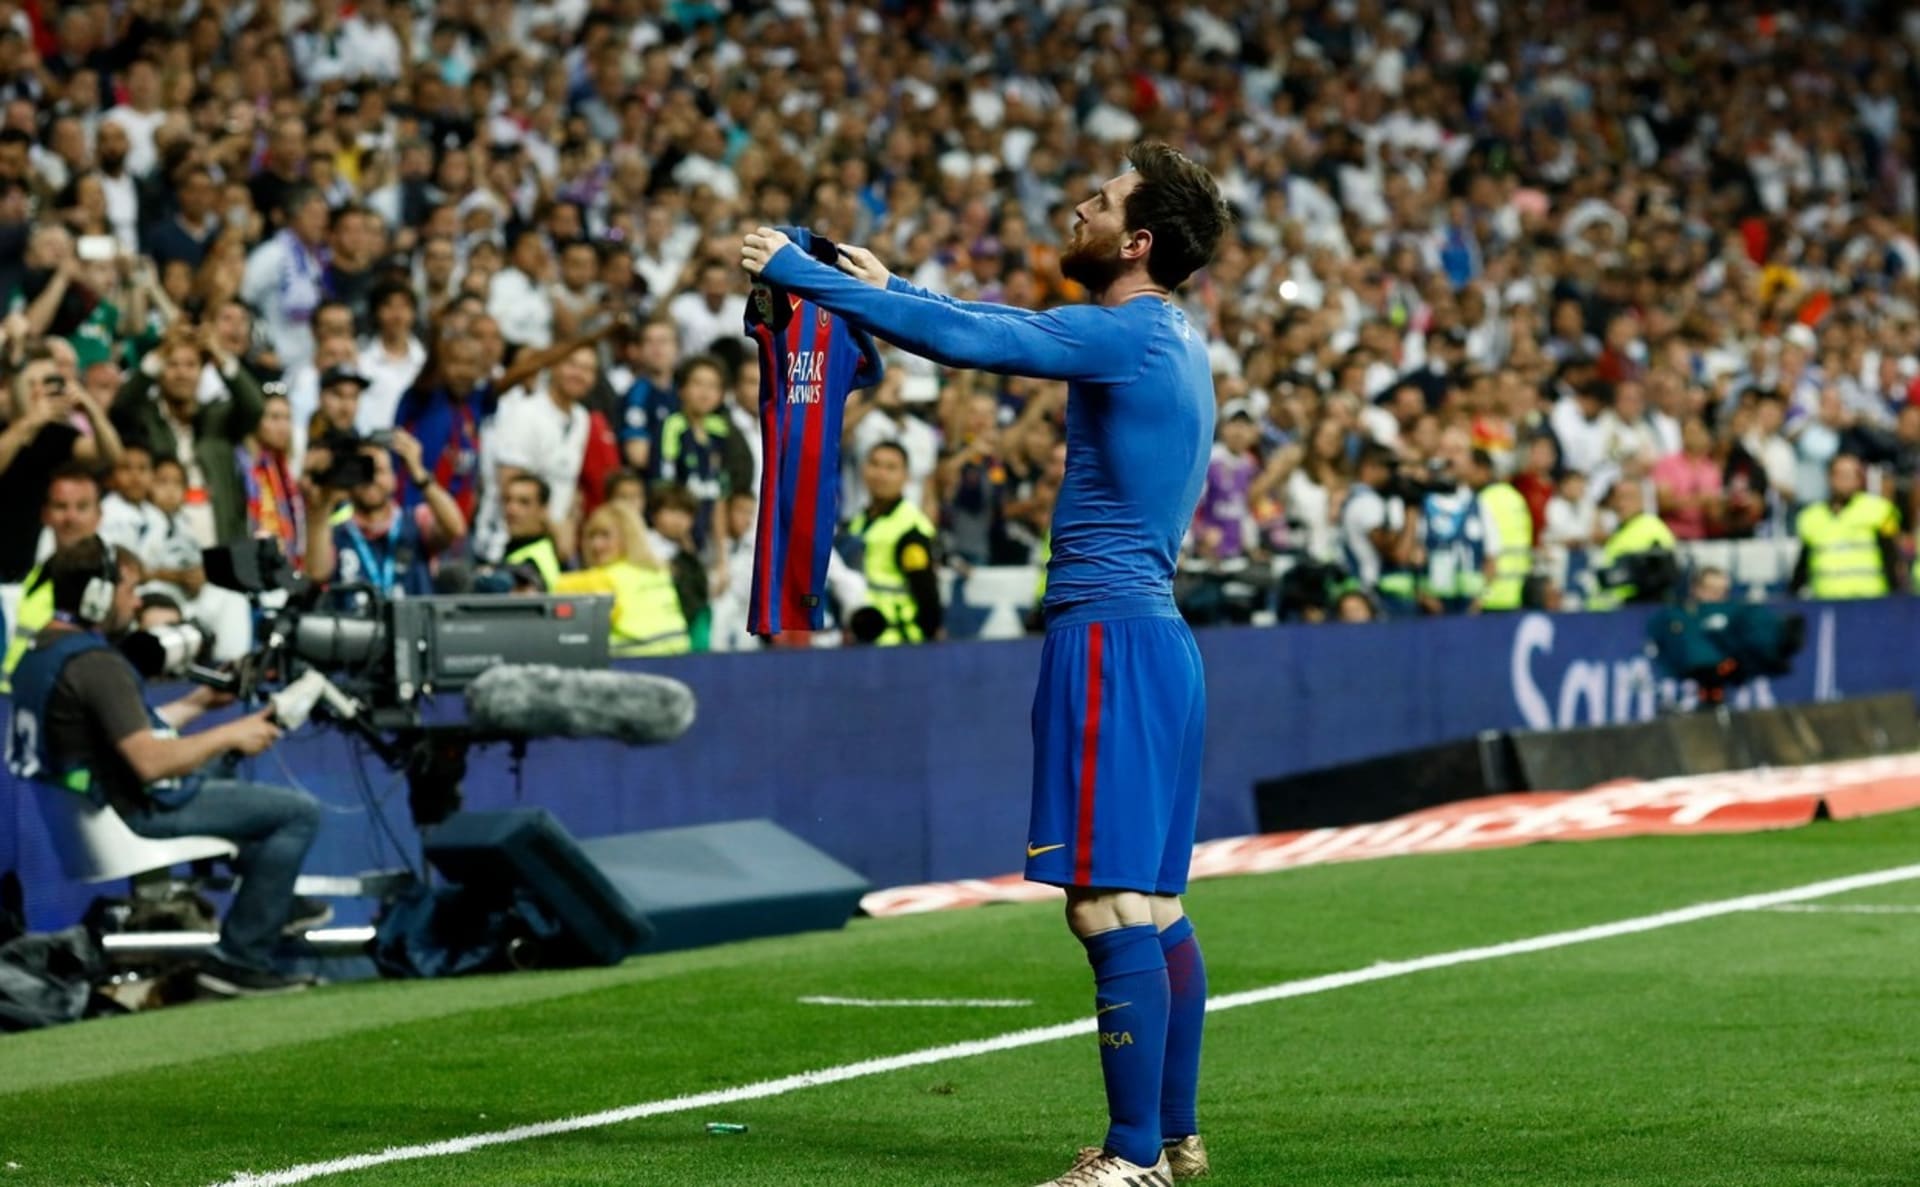 Na tuto oslavu Lionela Messiho jen tak nikdo nezapomene. Fanouška z Brazílie oslnila na tolik, že si ji nechal zvěčnit na svém těle.